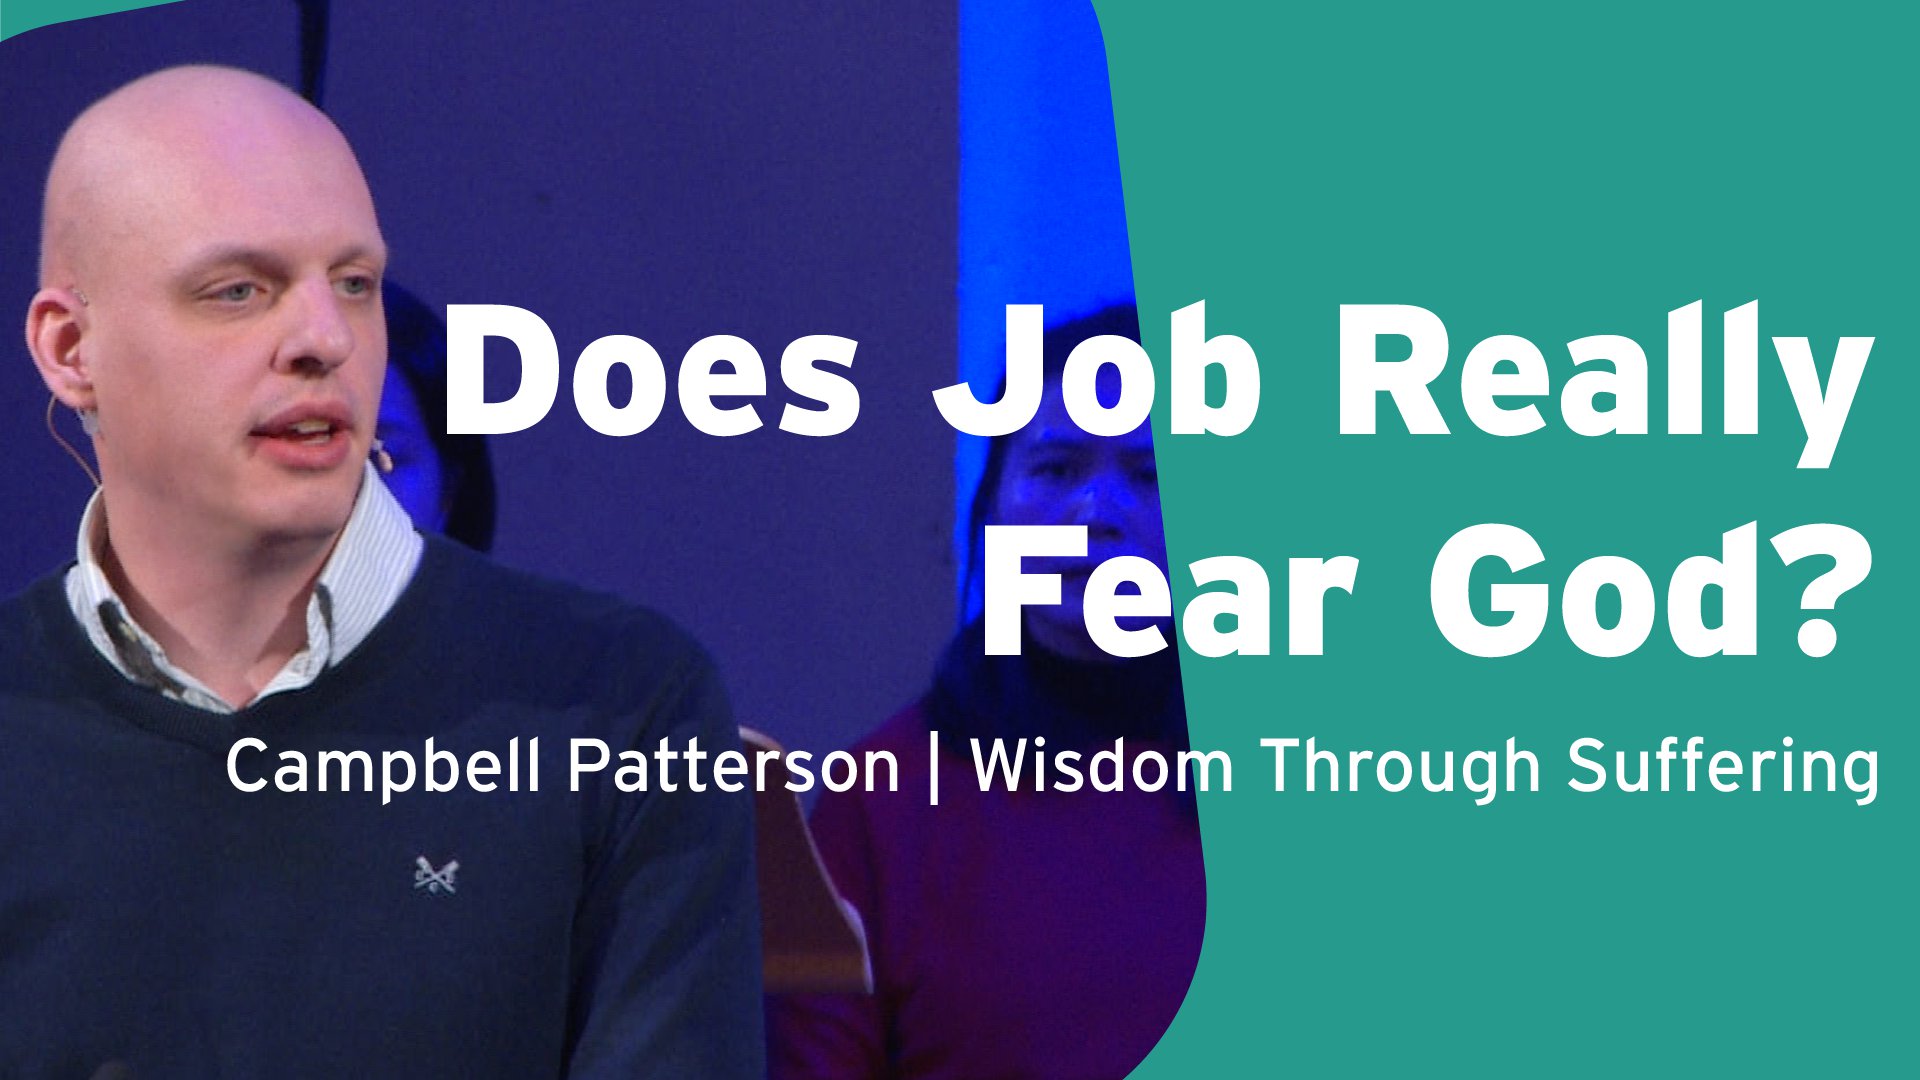 Does Job Really Fear God?